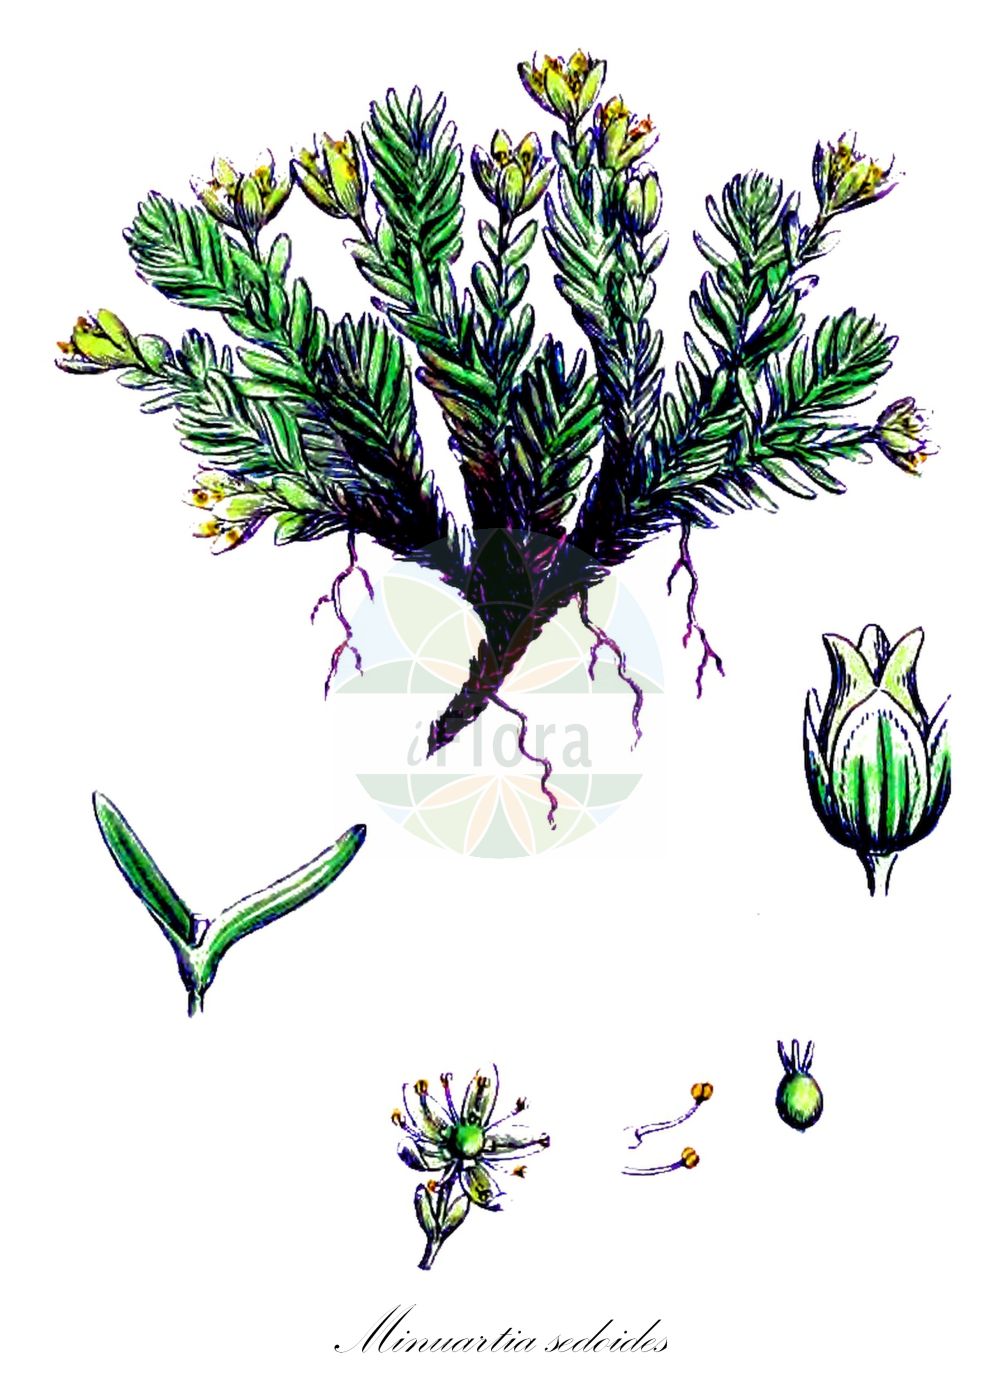 Historische Abbildung von Minuartia sedoides (Zwerg-Miere - Cyphel). Das Bild zeigt Blatt, Bluete, Frucht und Same. ---- Historical Drawing of Minuartia sedoides (Zwerg-Miere - Cyphel). The image is showing leaf, flower, fruit and seed.(Minuartia sedoides,Zwerg-Miere,Cyphel,Alsine cherleri,Alsine cherleria,Alsine cherleriae,Alsine sedoides,Cherleria sedoides,Minuartia sedoides,Zwerg-Miere,Cyphel,Mossy Cyphel,Mossy Cyphel,Dwarf Cherleria,Minuartia,Miere,Stitchwort,Caryophyllaceae,Nelkengewächse,Pink family,Blatt,Bluete,Frucht,Same,leaf,flower,fruit,seed,Sowerby (1790-1813))